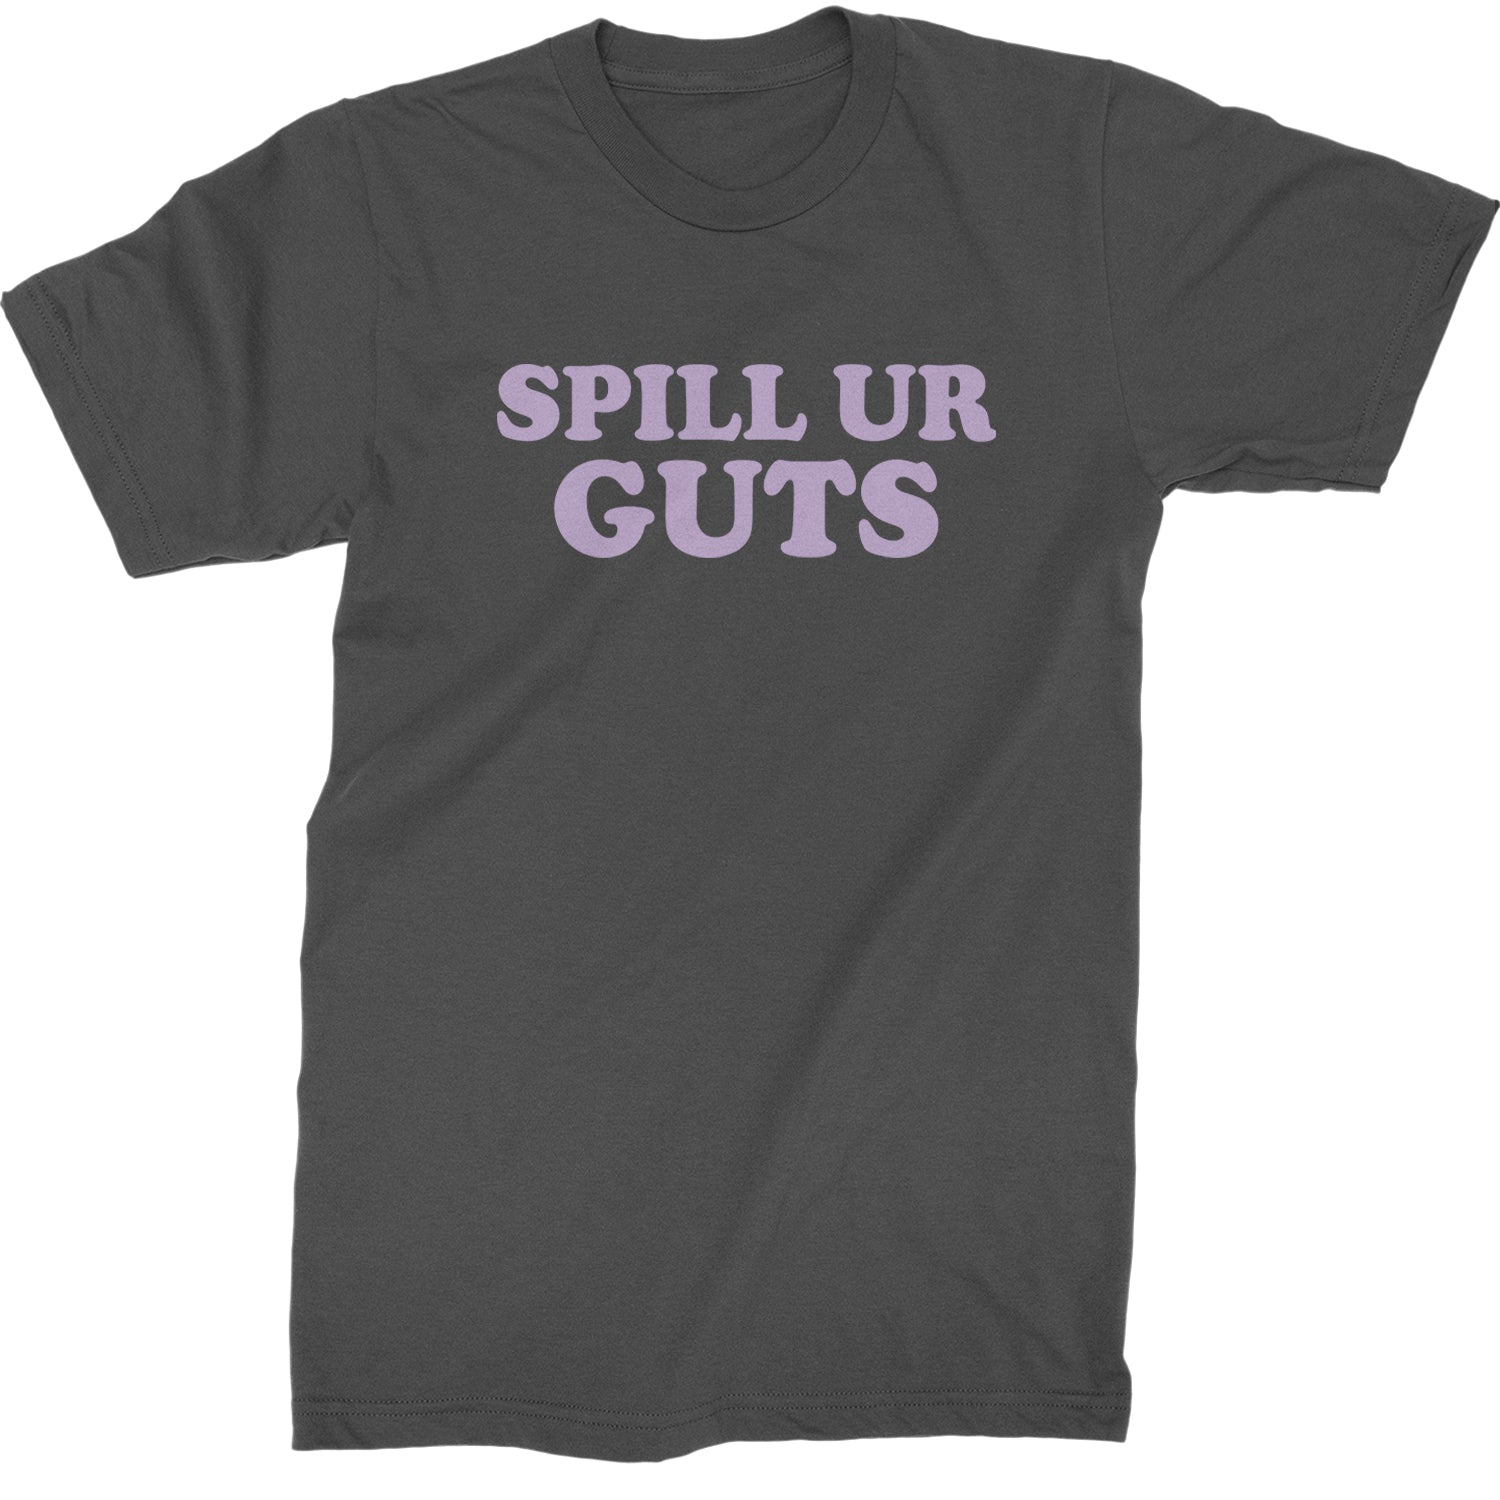 Spill Ur Guts Music Mens T-shirt Charcoal Grey